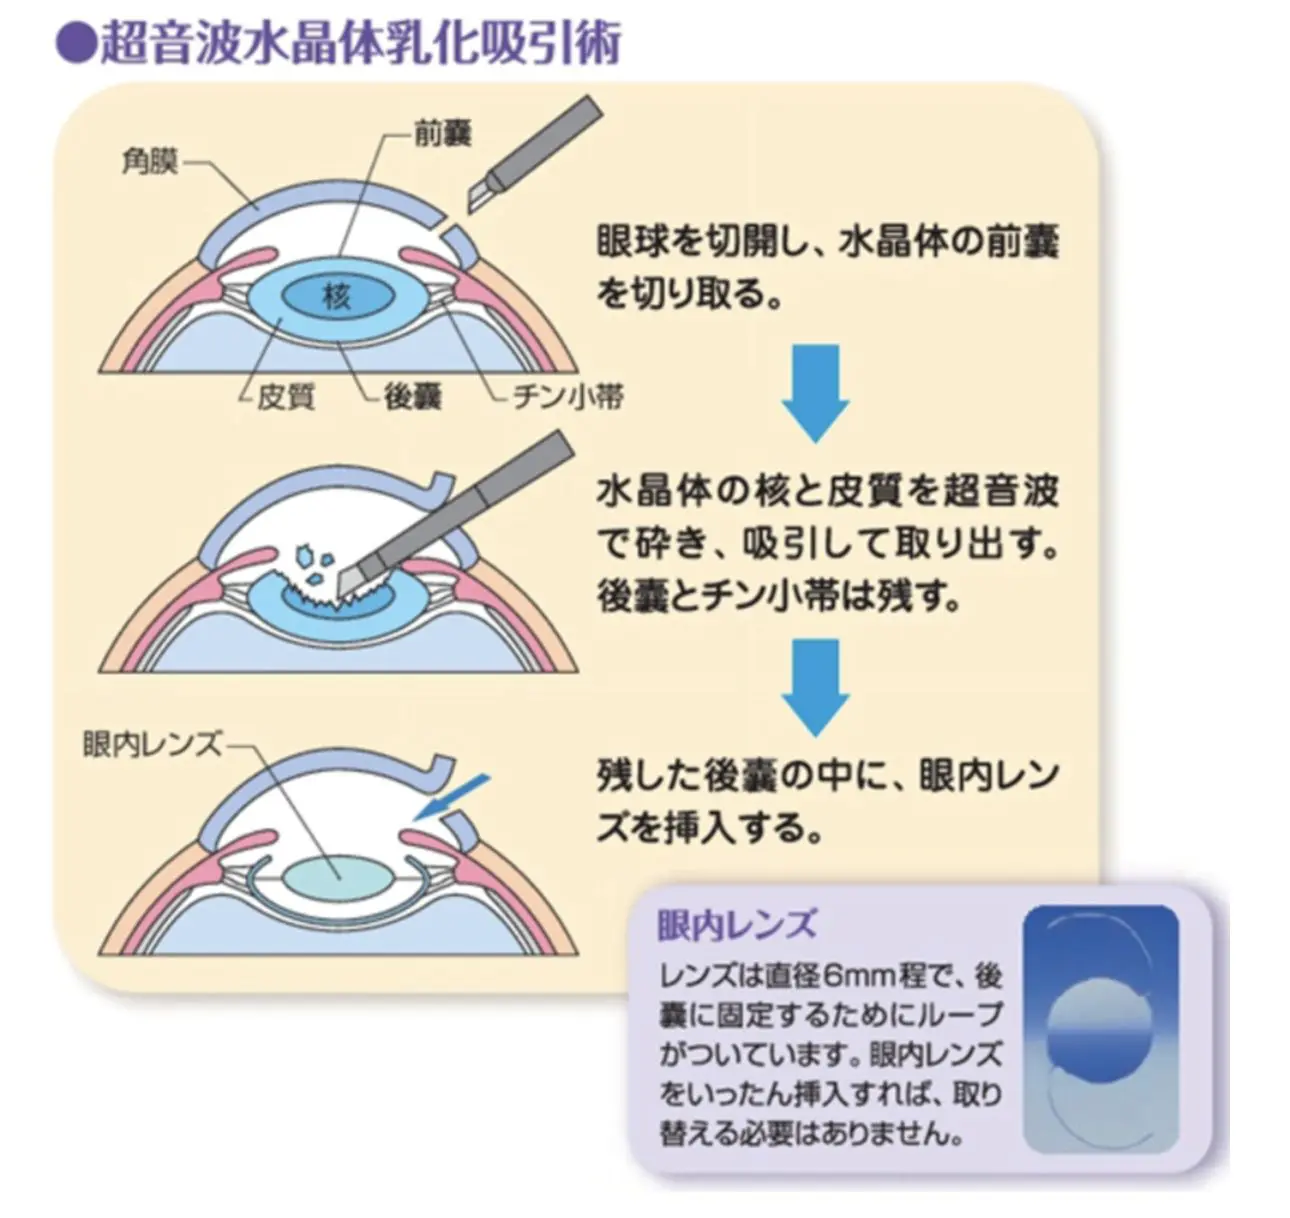 白内障手術 Cataract Surgery | 横浜井土ヶ谷アイクリニック